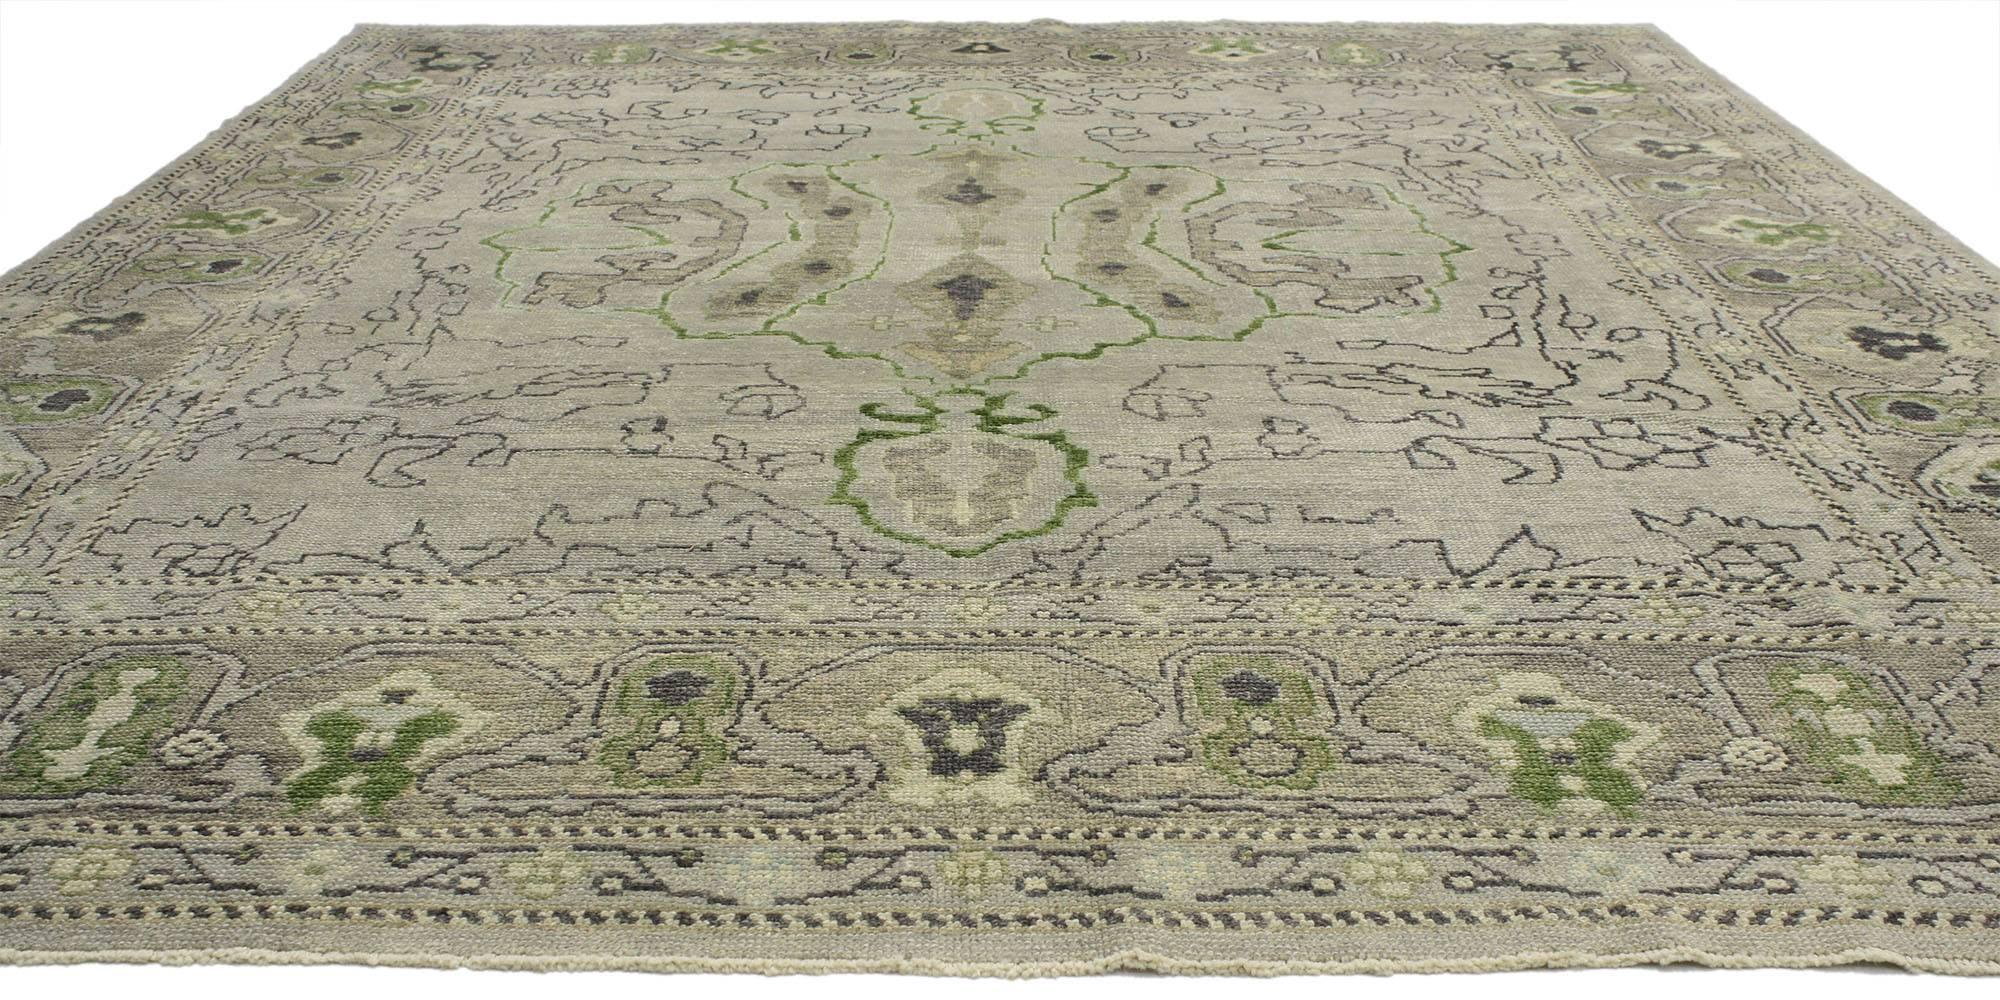 52237, tapis turc contemporain Oushak au style moderne. Servez l'élégance et la sophistication avec ce tapis turc contemporain Oushak au style moderne. Le tapis Oushak présente un motif abstrait de vigne entouré d'une bordure complémentaire. Rendu